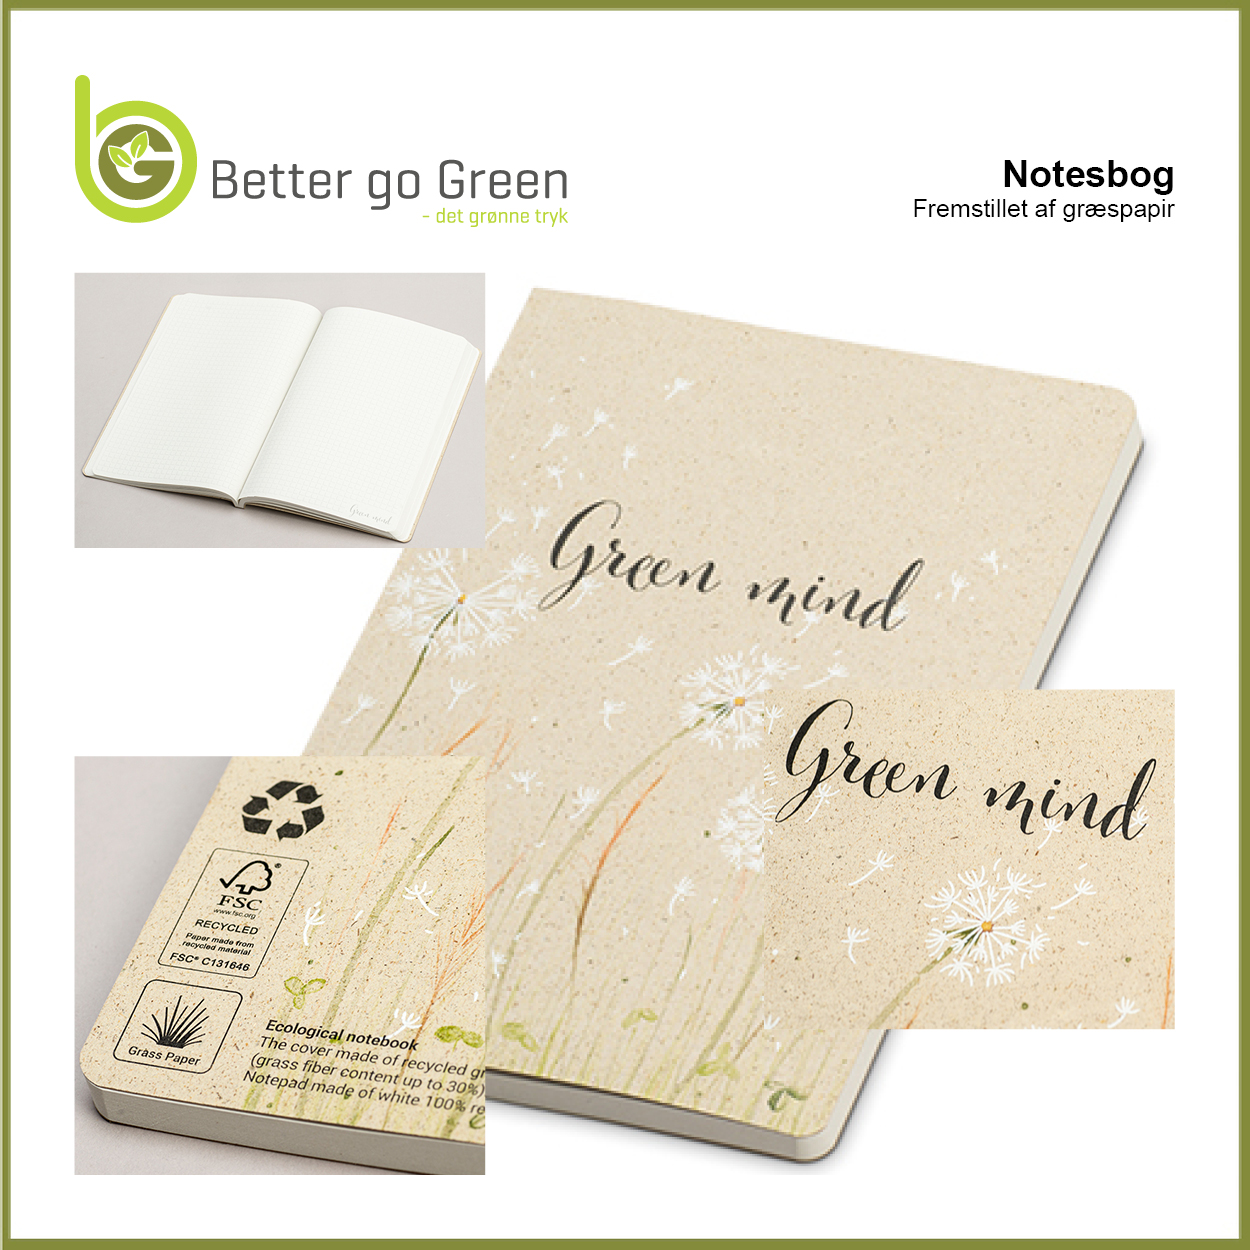 Notesbog af græspapir får du hos BetterGoGreen